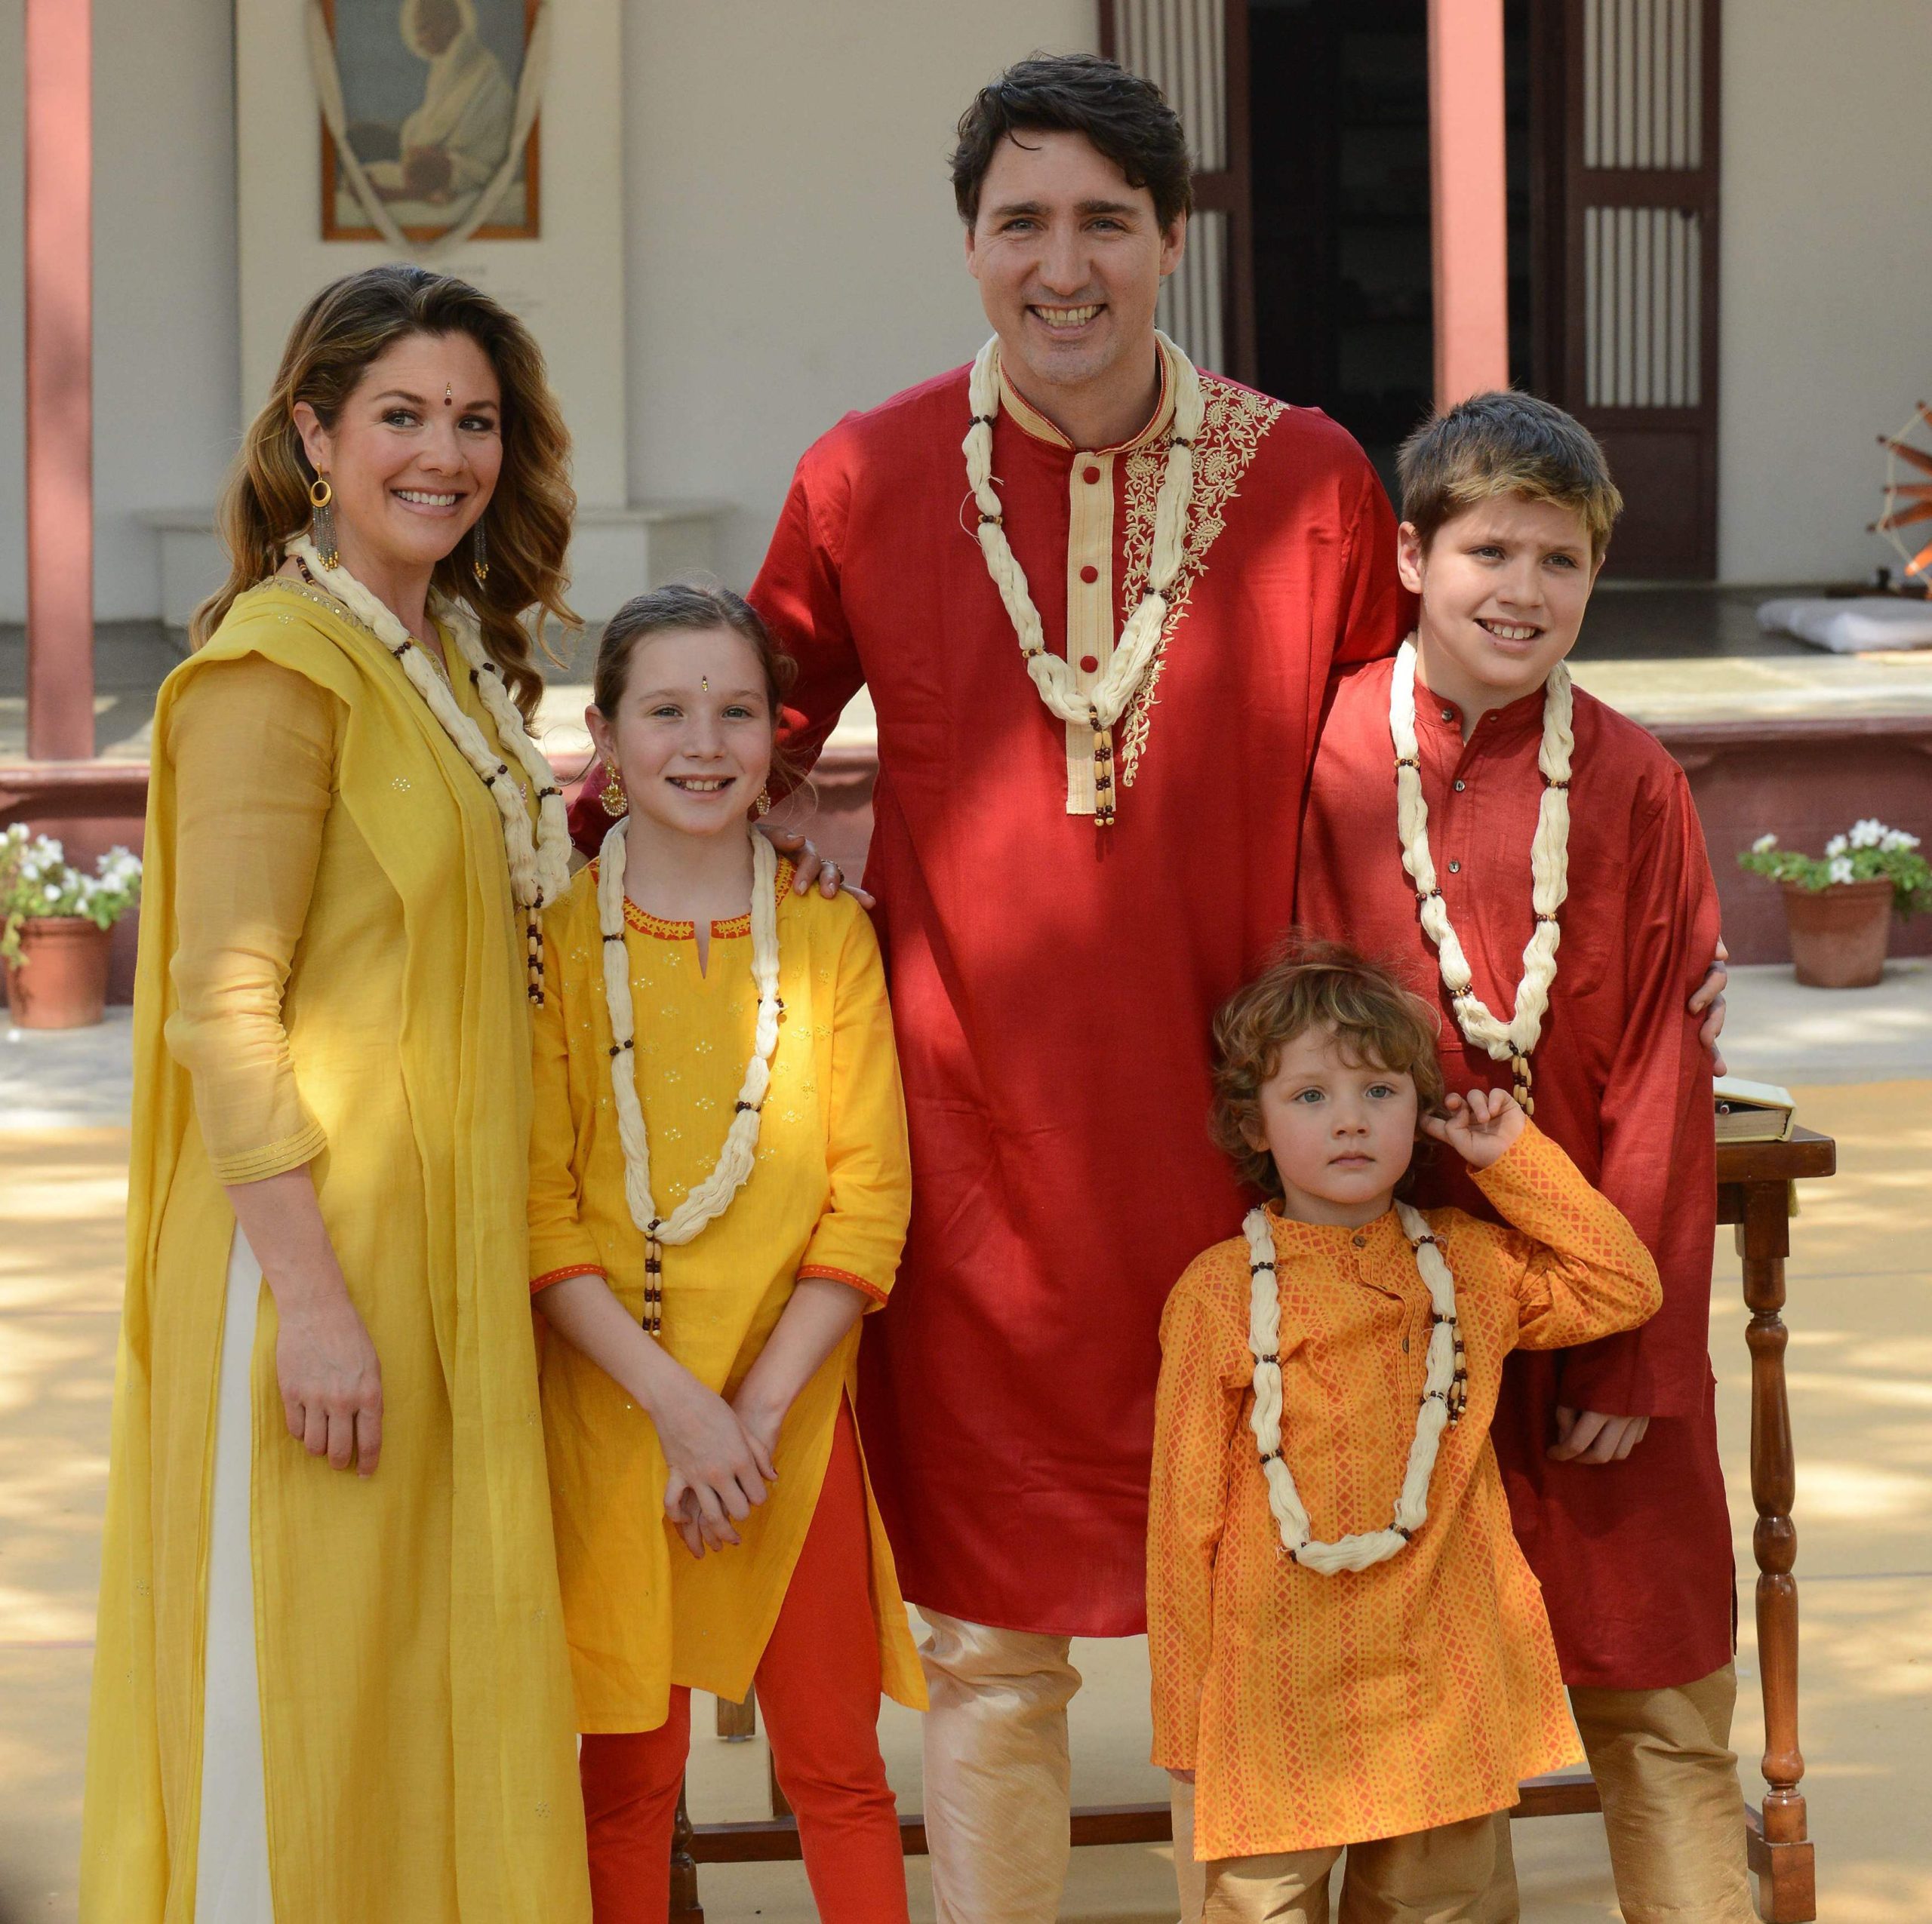 Los atuendos de la familia fueron objeto de burla en una gira por India en 2018